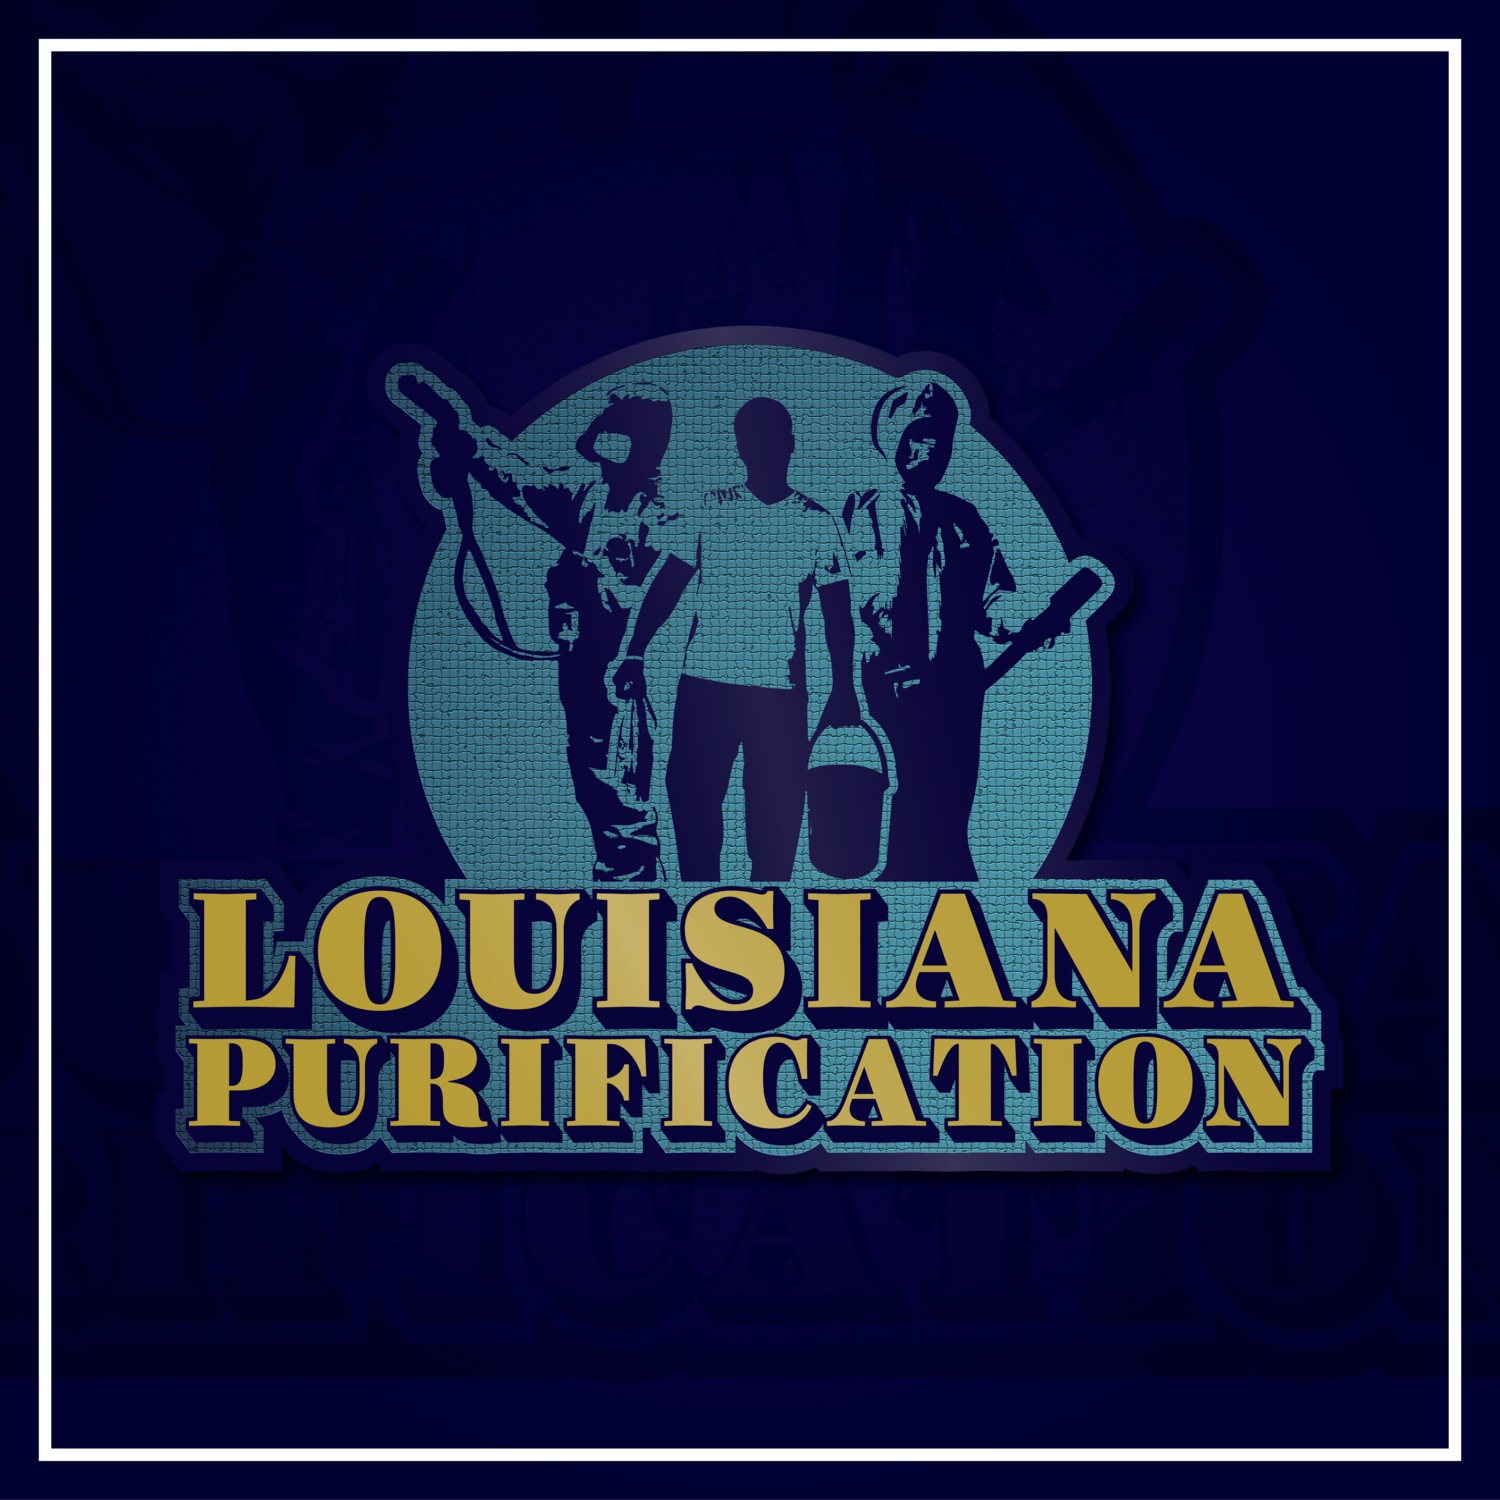 Louisiana Purfication